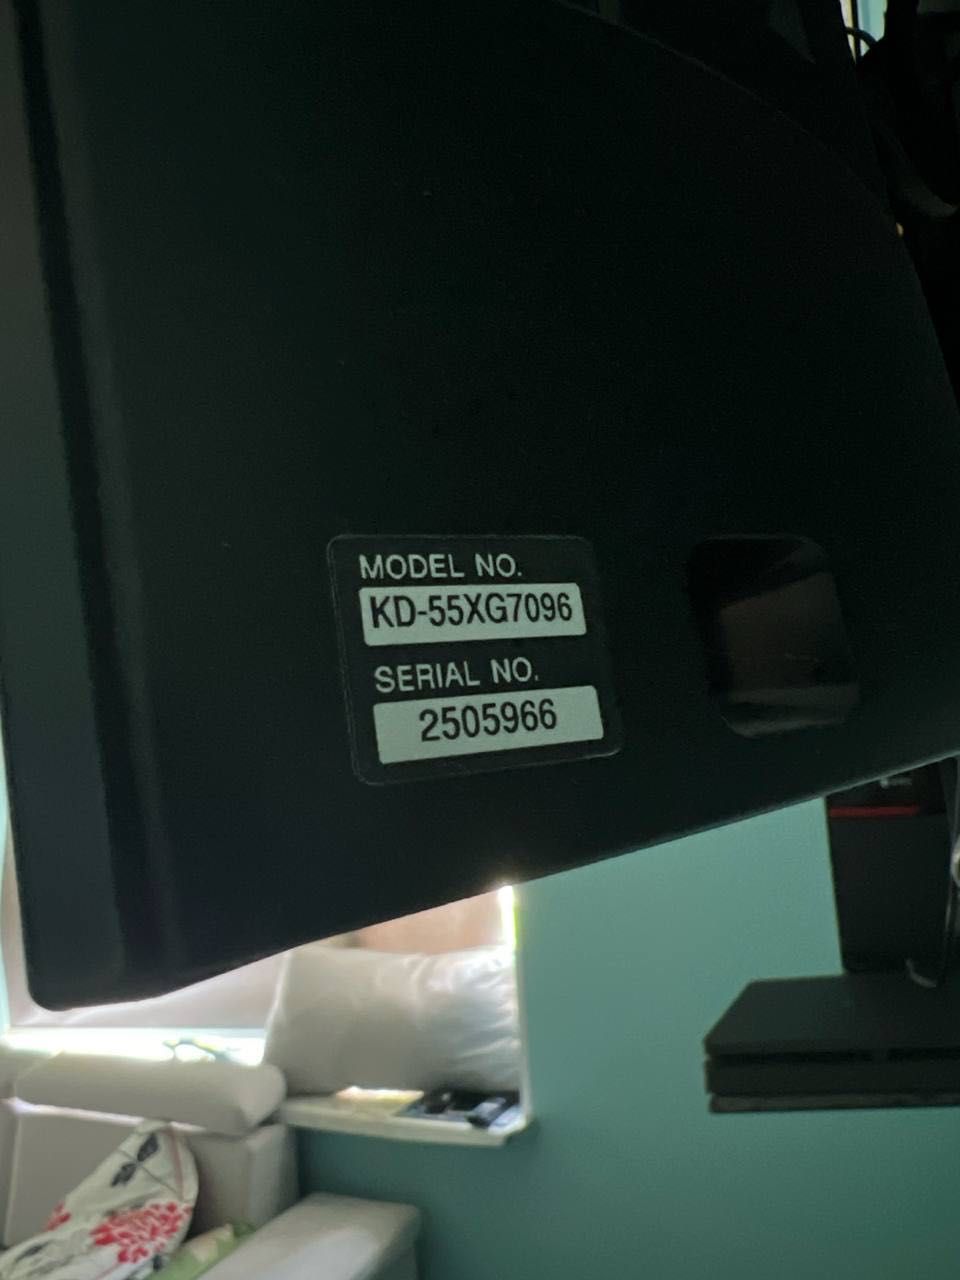 Телевизор Sony KD-55XD7096, цвет черный